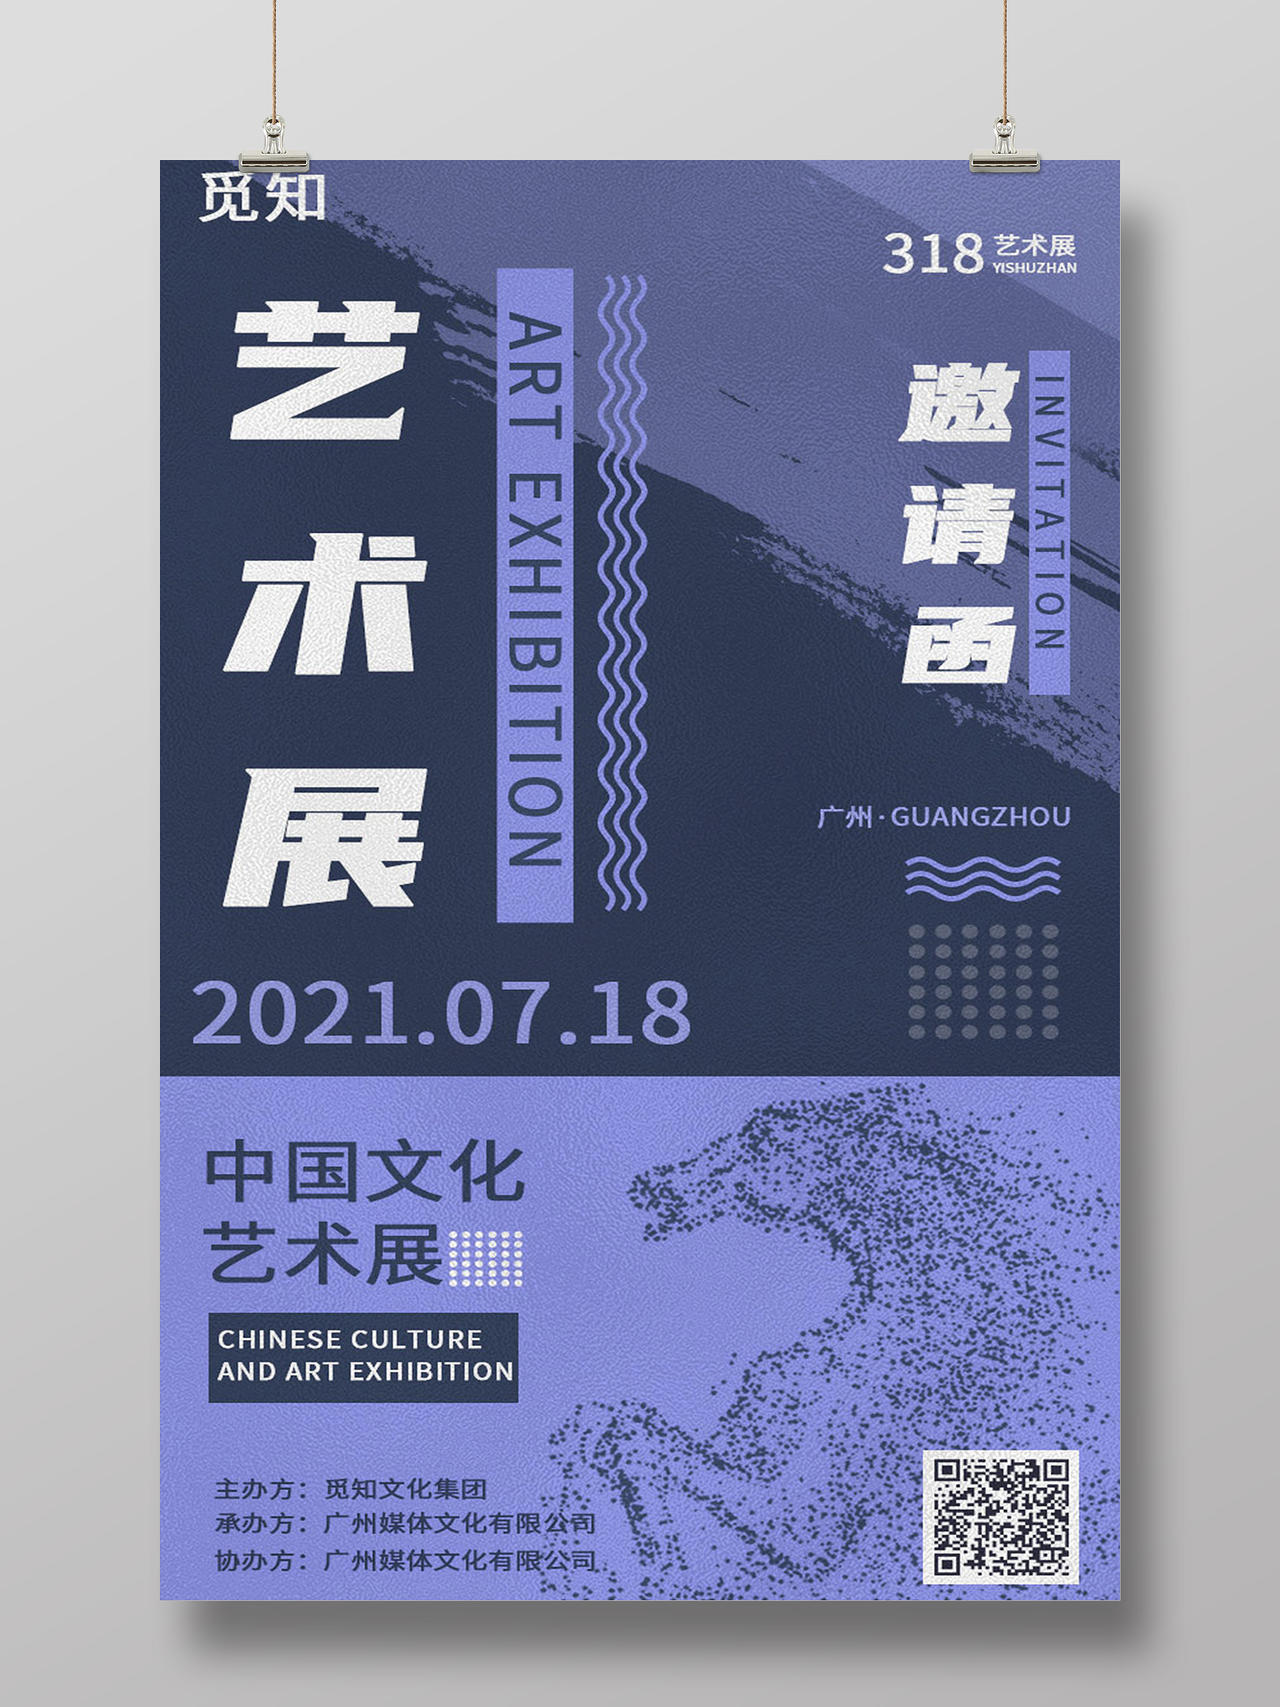 紫色磨砂背景中国文化艺术展邀请函